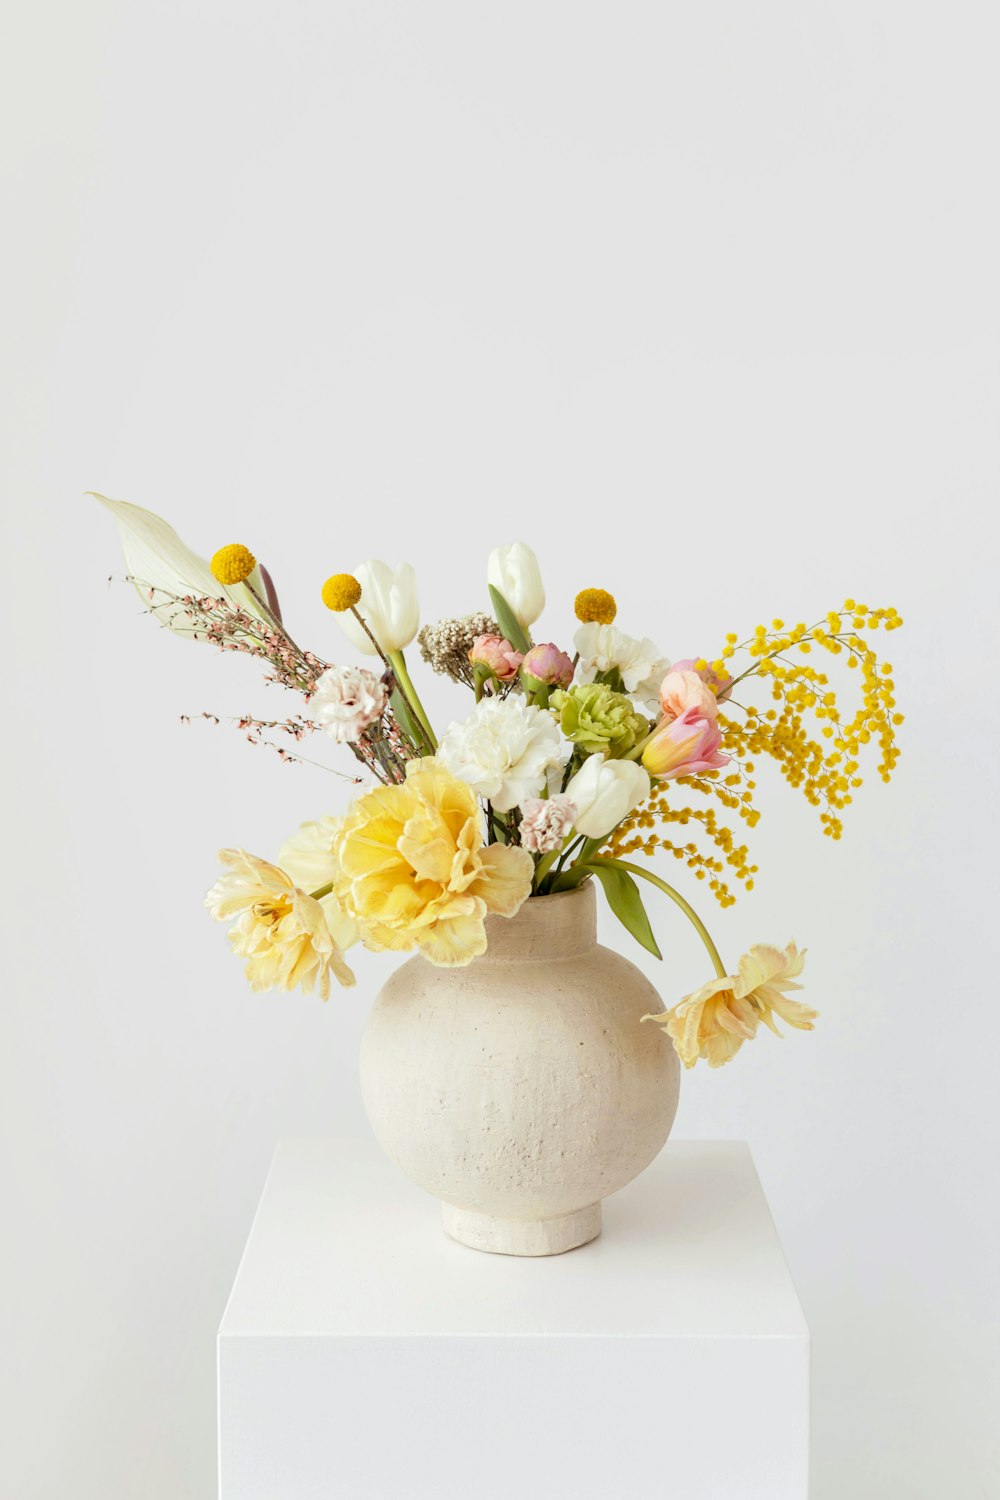 un vaso bianco con fiori gialli e bianchi in esso